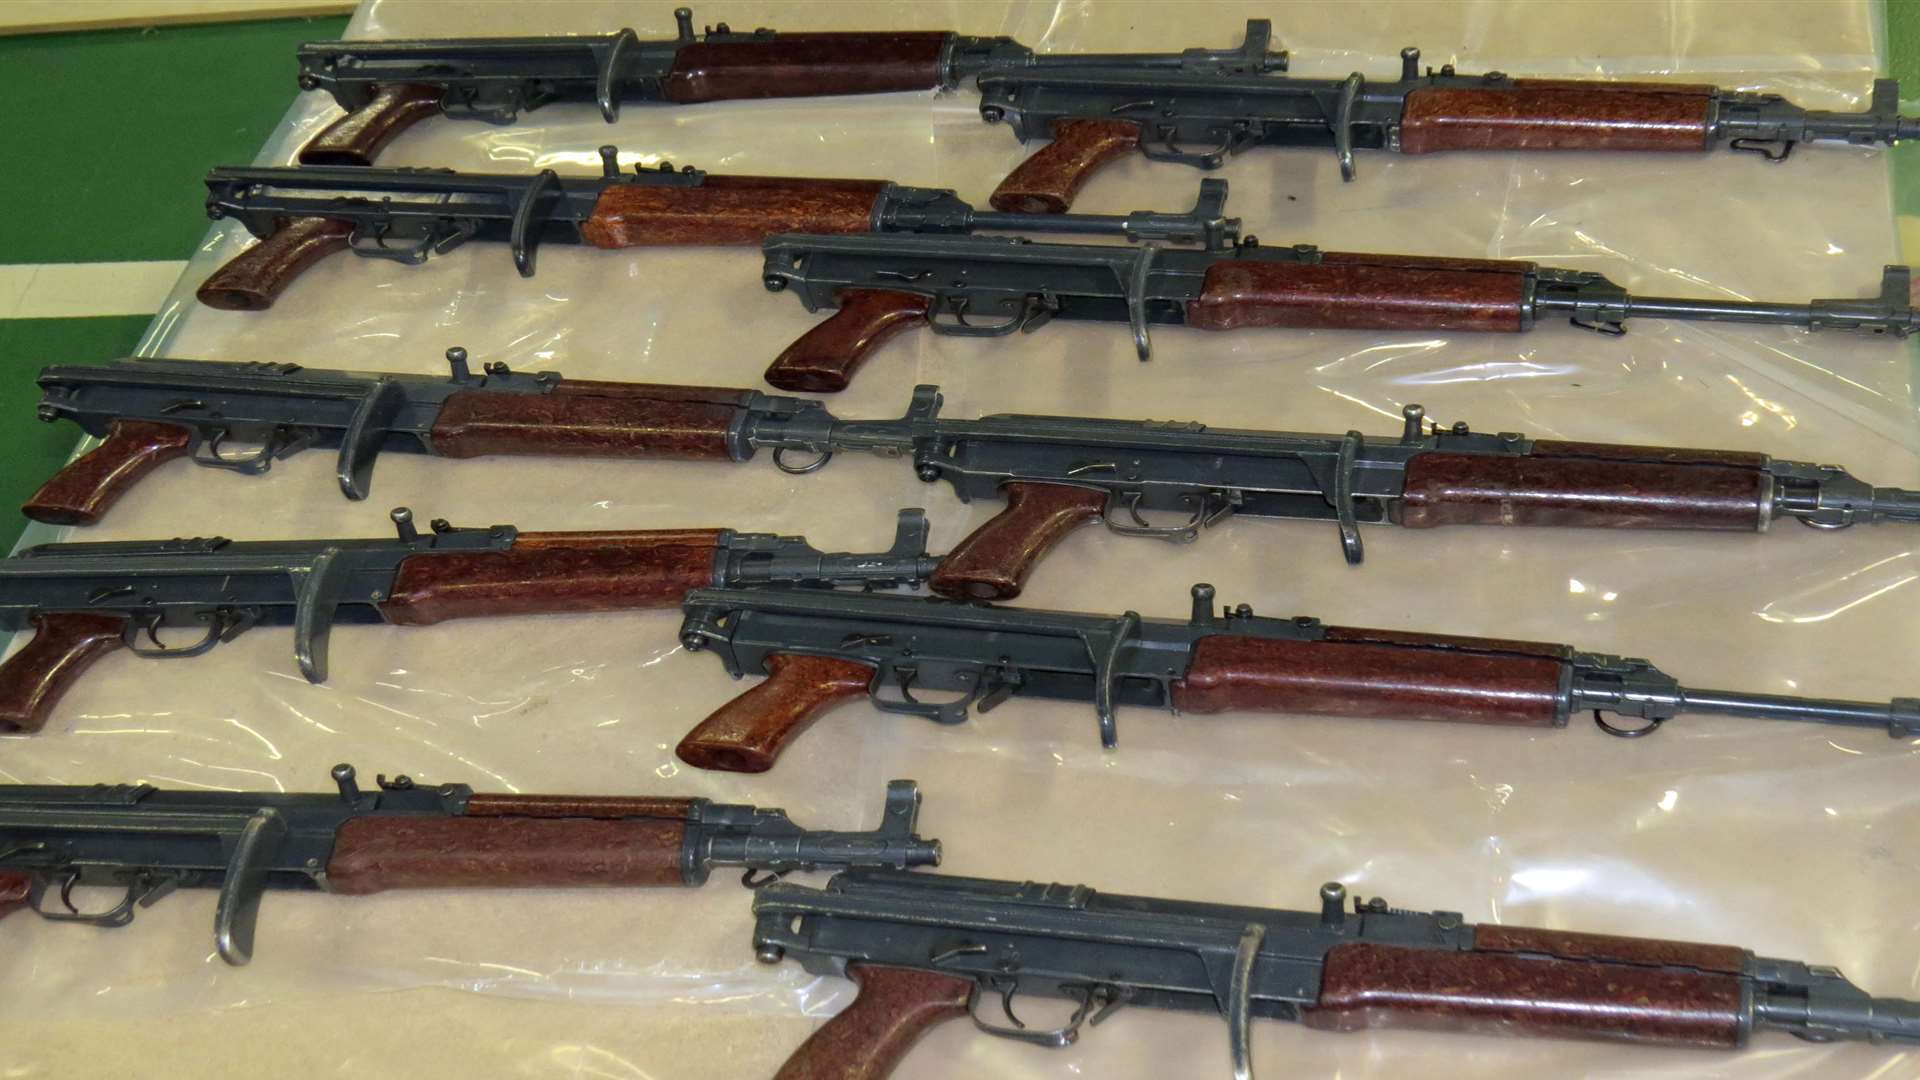 Guns seized near Cuxton Marina